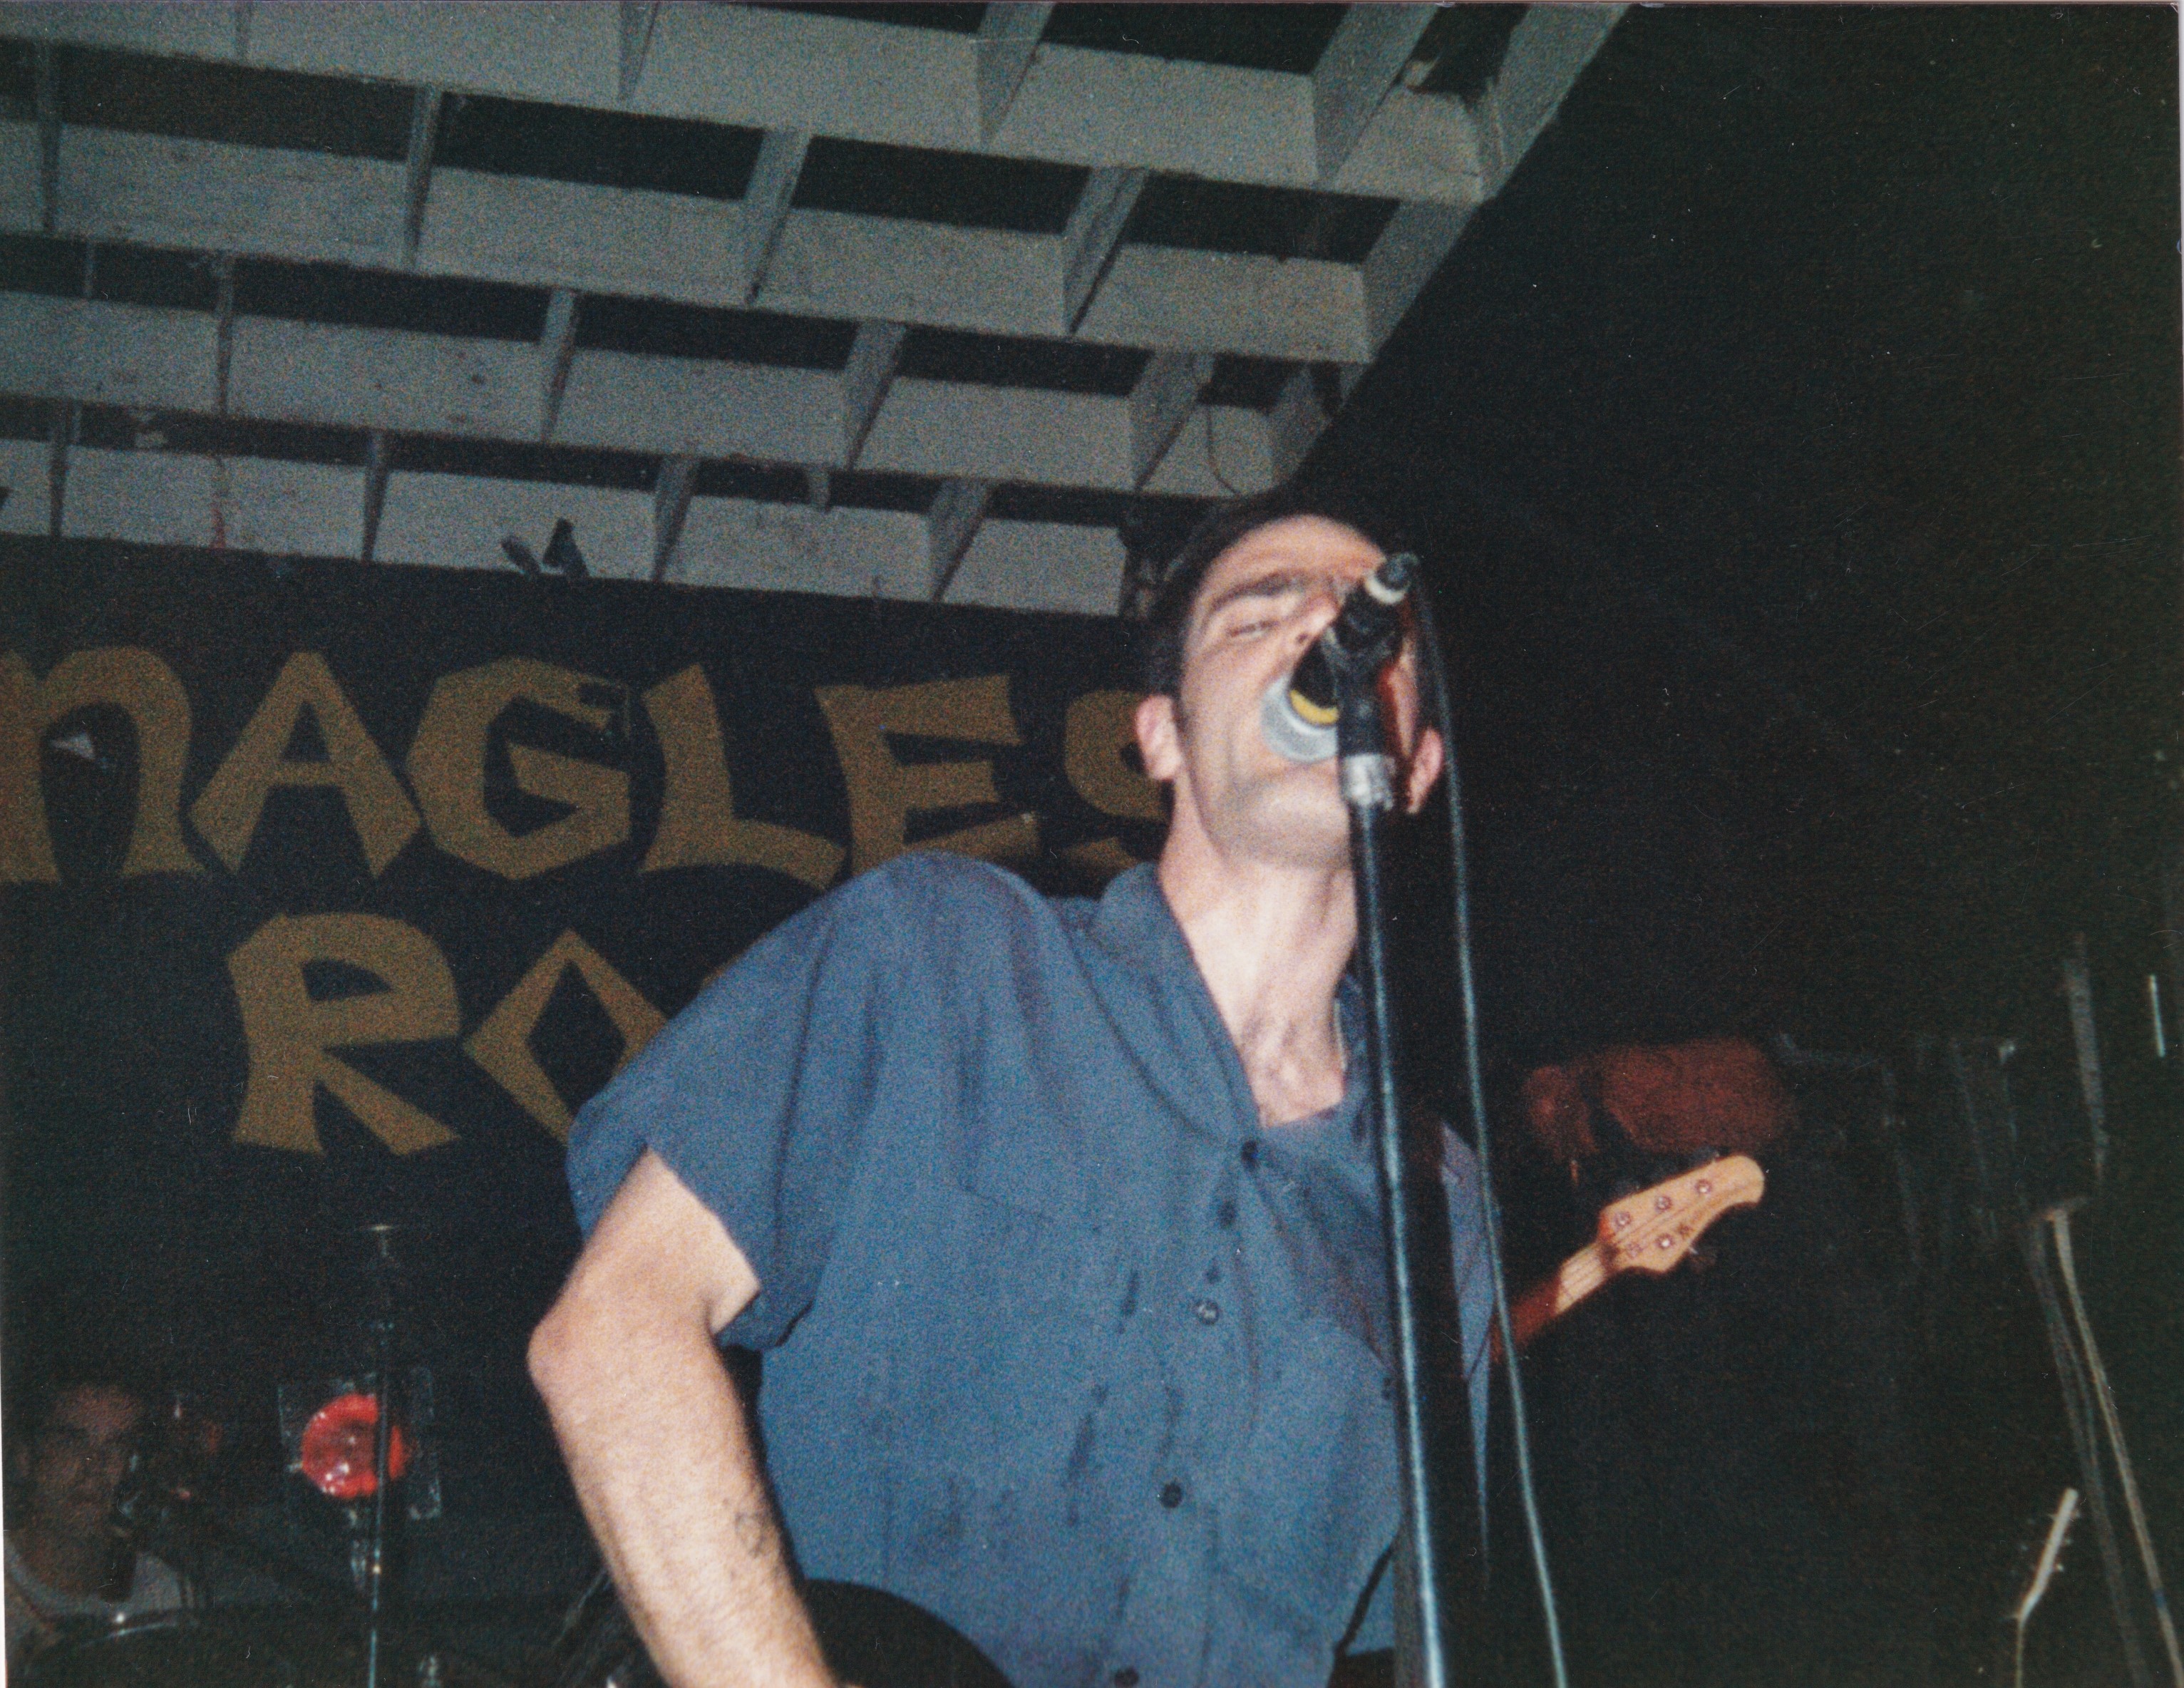 Fugazi, McGonagles 17th September 1990